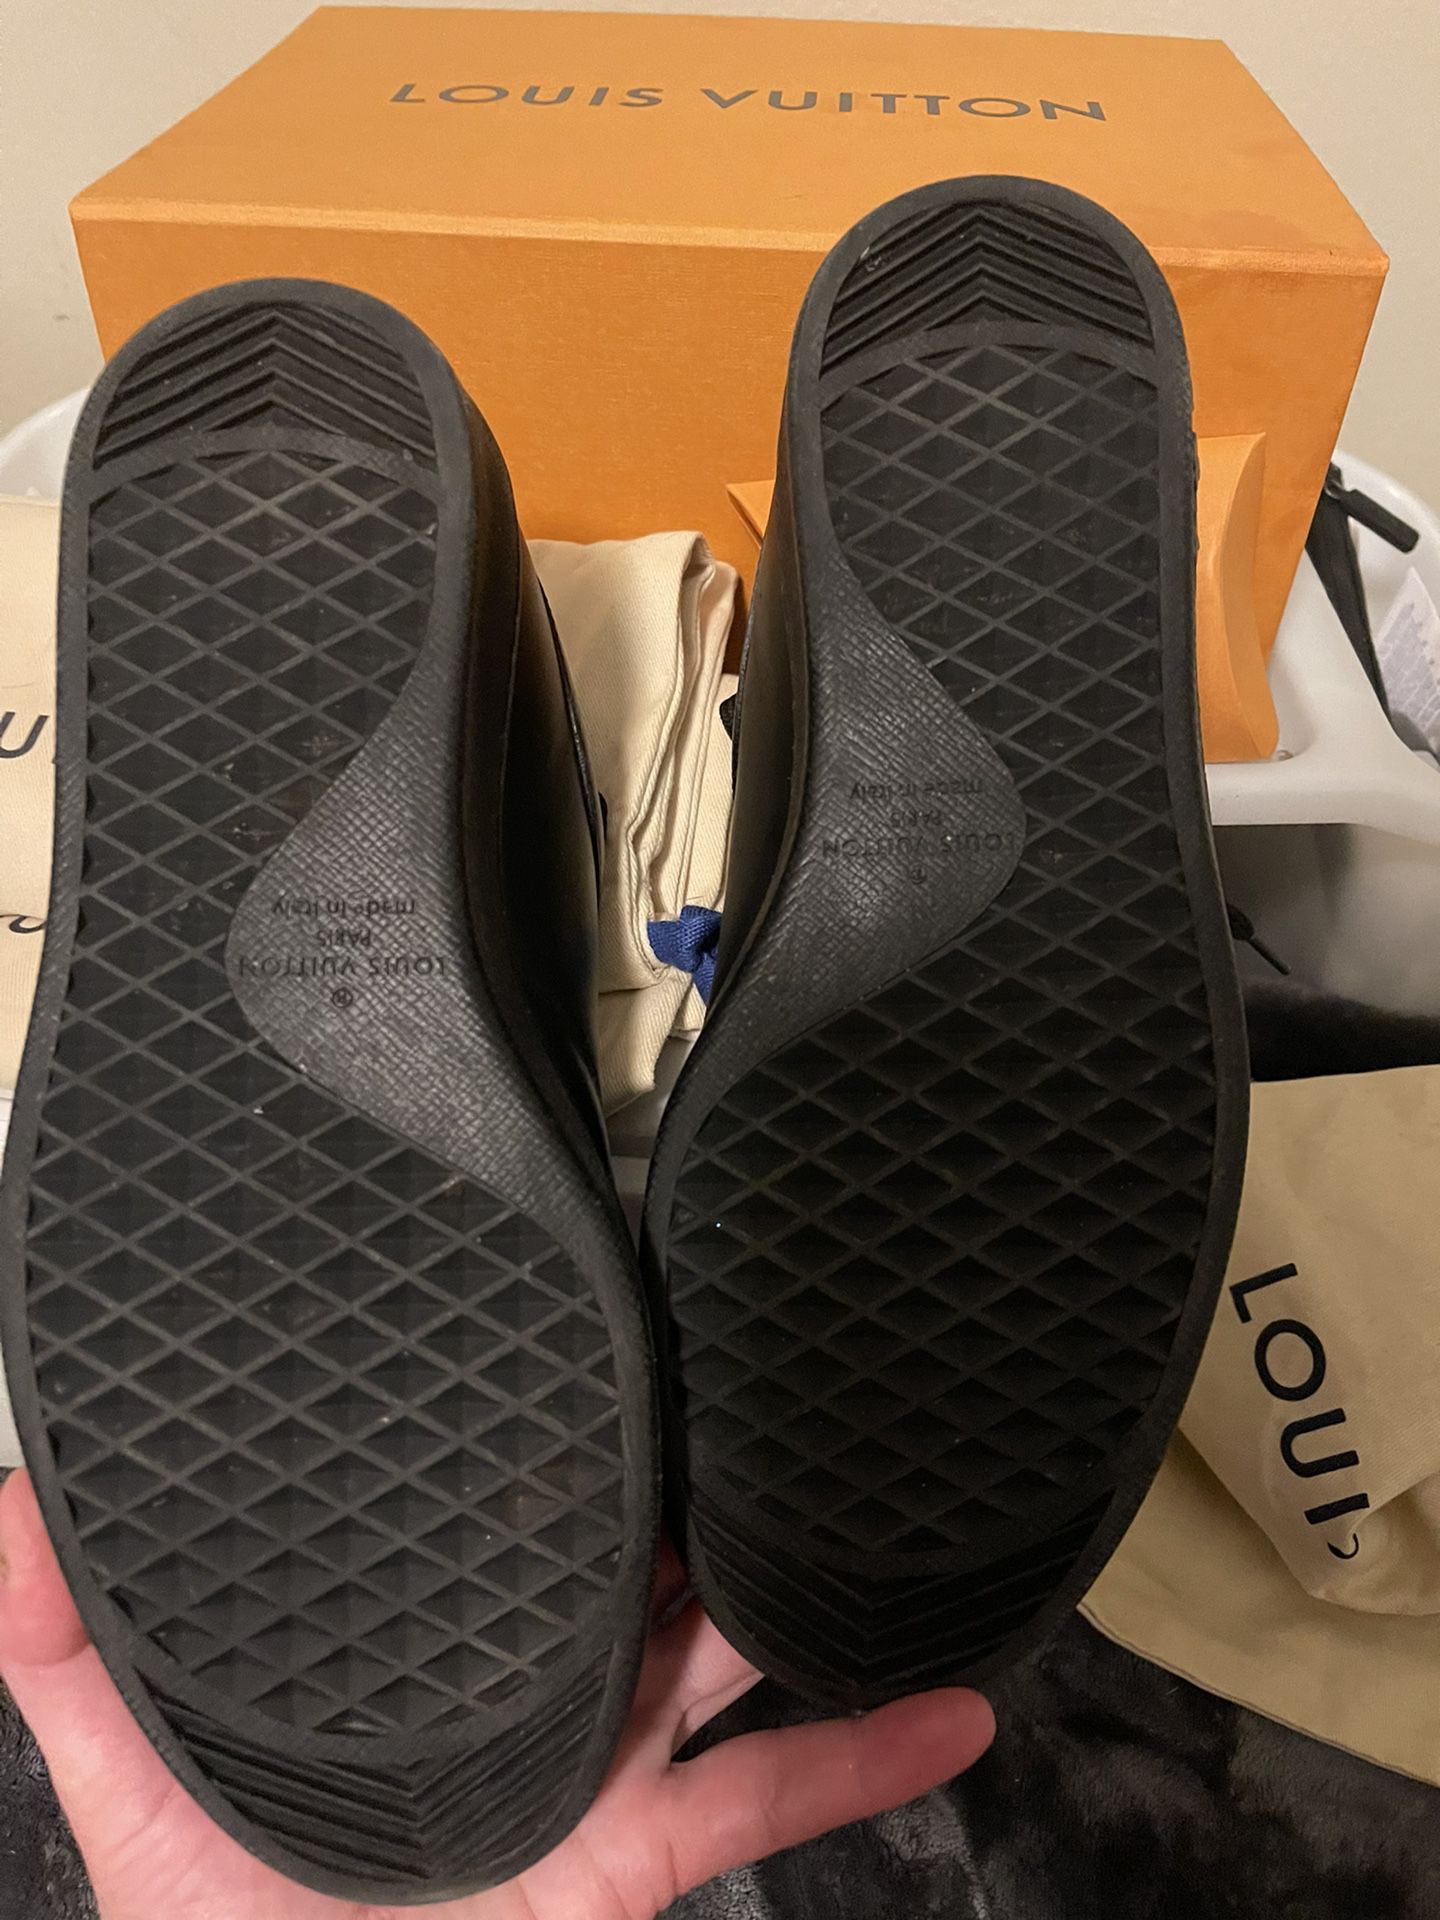 Louis Vuitton, Shoes, Louis Vuitton Mens Black And Orange Sneakers